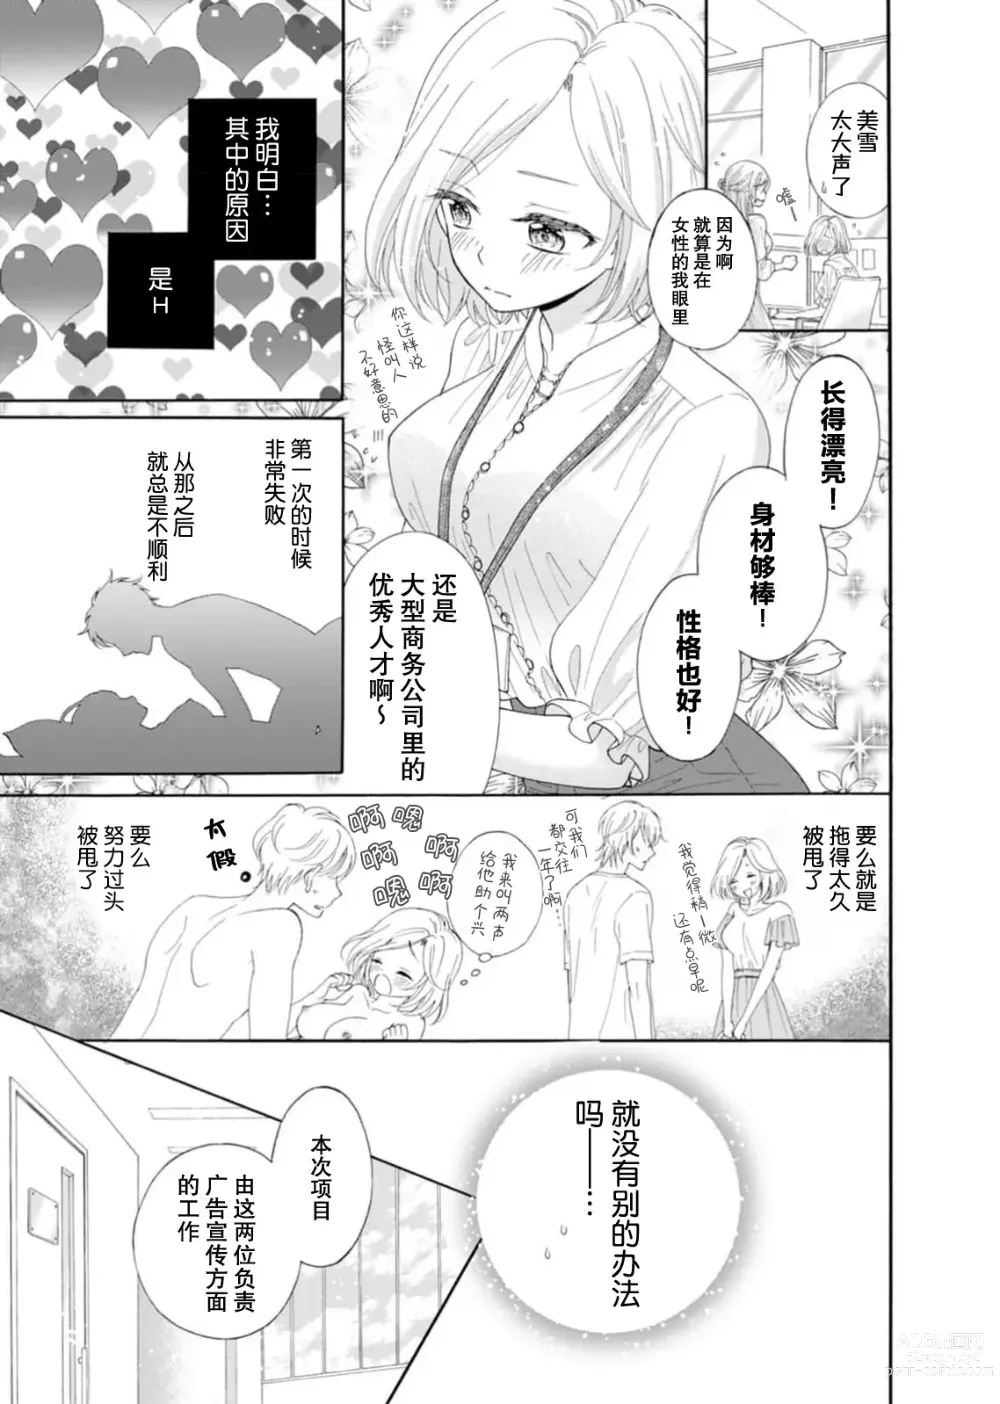 Page 3 of manga 再度初体验！与那时不同。深入灵魂的快感连心都融化…